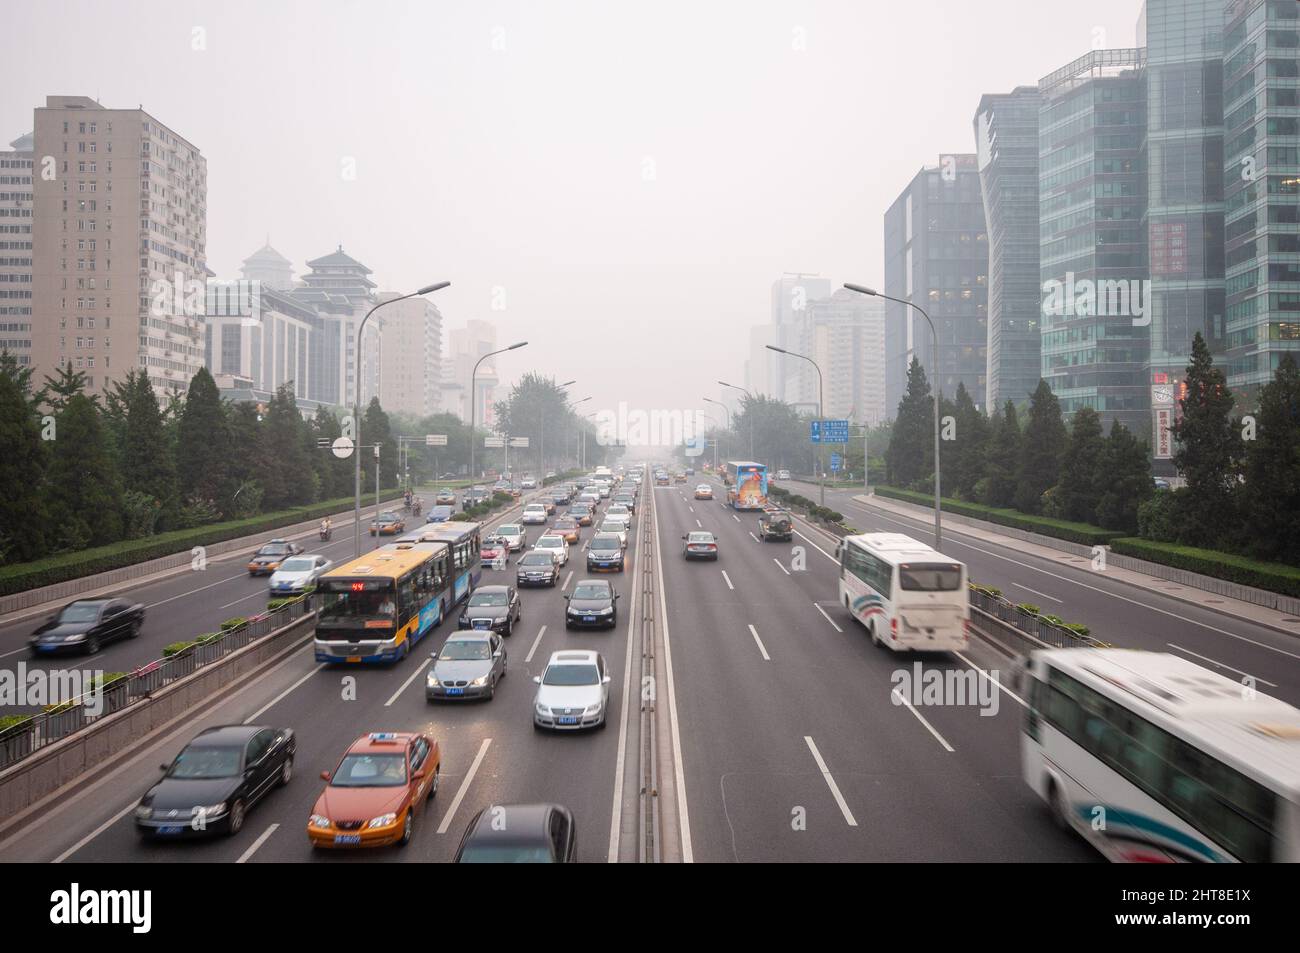 Pechino, Cina - 13 agosto 2010: L'inquinamento atmosferico avvolge gli edifici di uffici moden che si affacciano sulla seconda circonvallazione di Pechino. Foto Stock